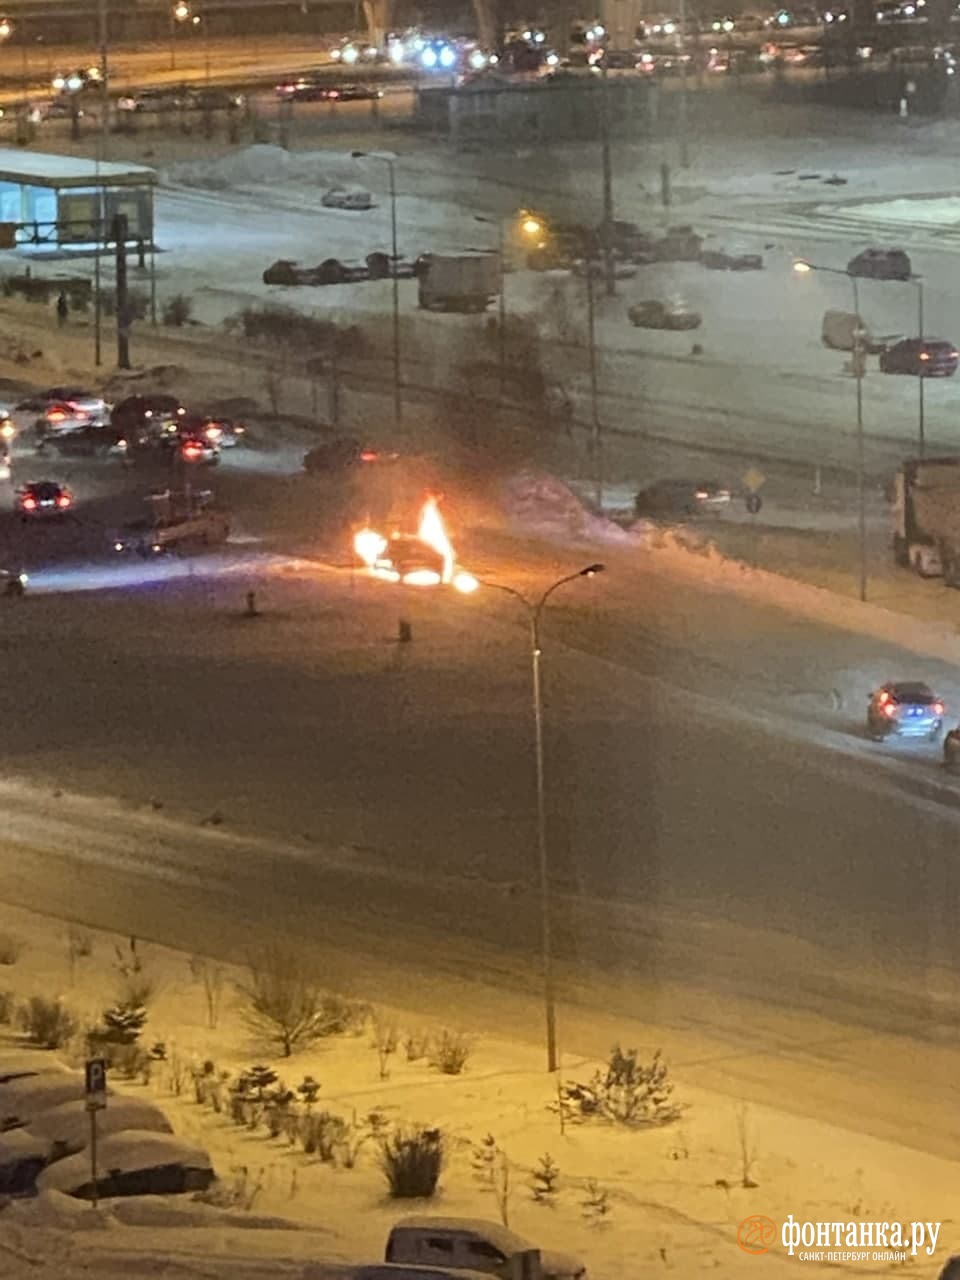 Две машины сгорели за пару часов в Петербурге. Автомобильный «факел» на Богатырском заставил сдавать назад